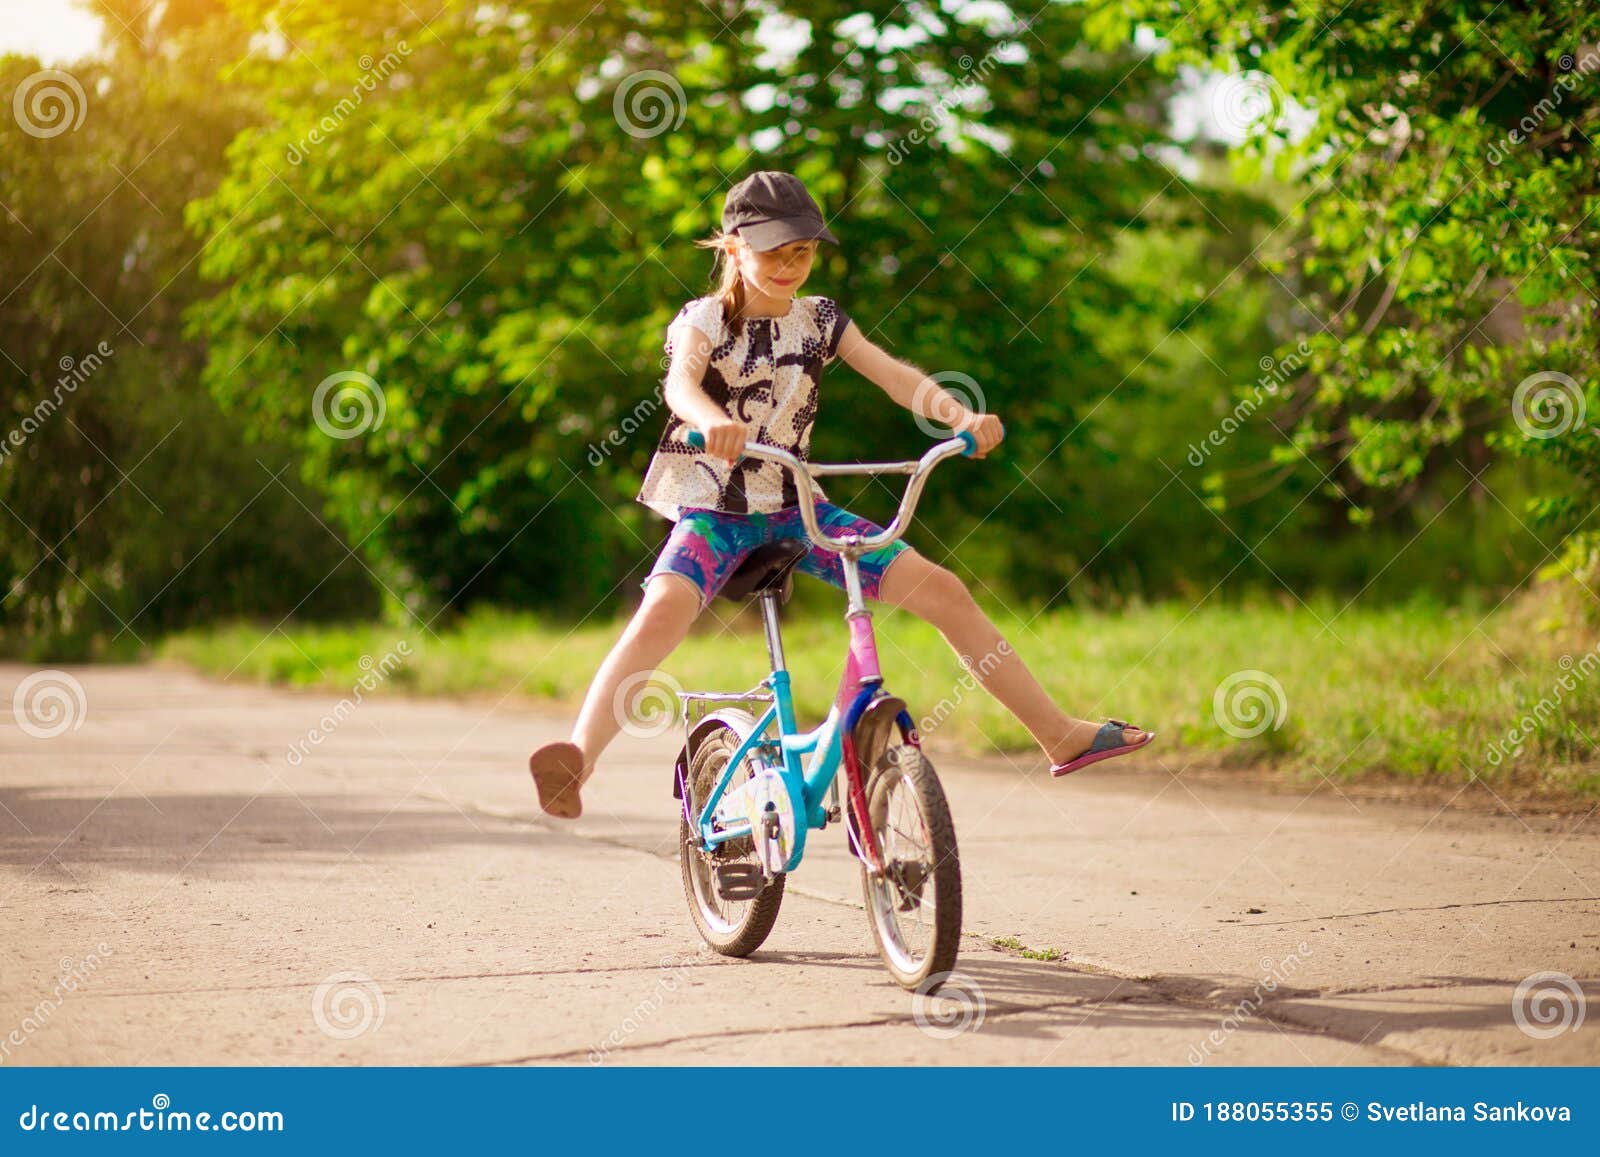 送给孩子最好的一件礼物——骑记小学生山地自行车！ - 知乎